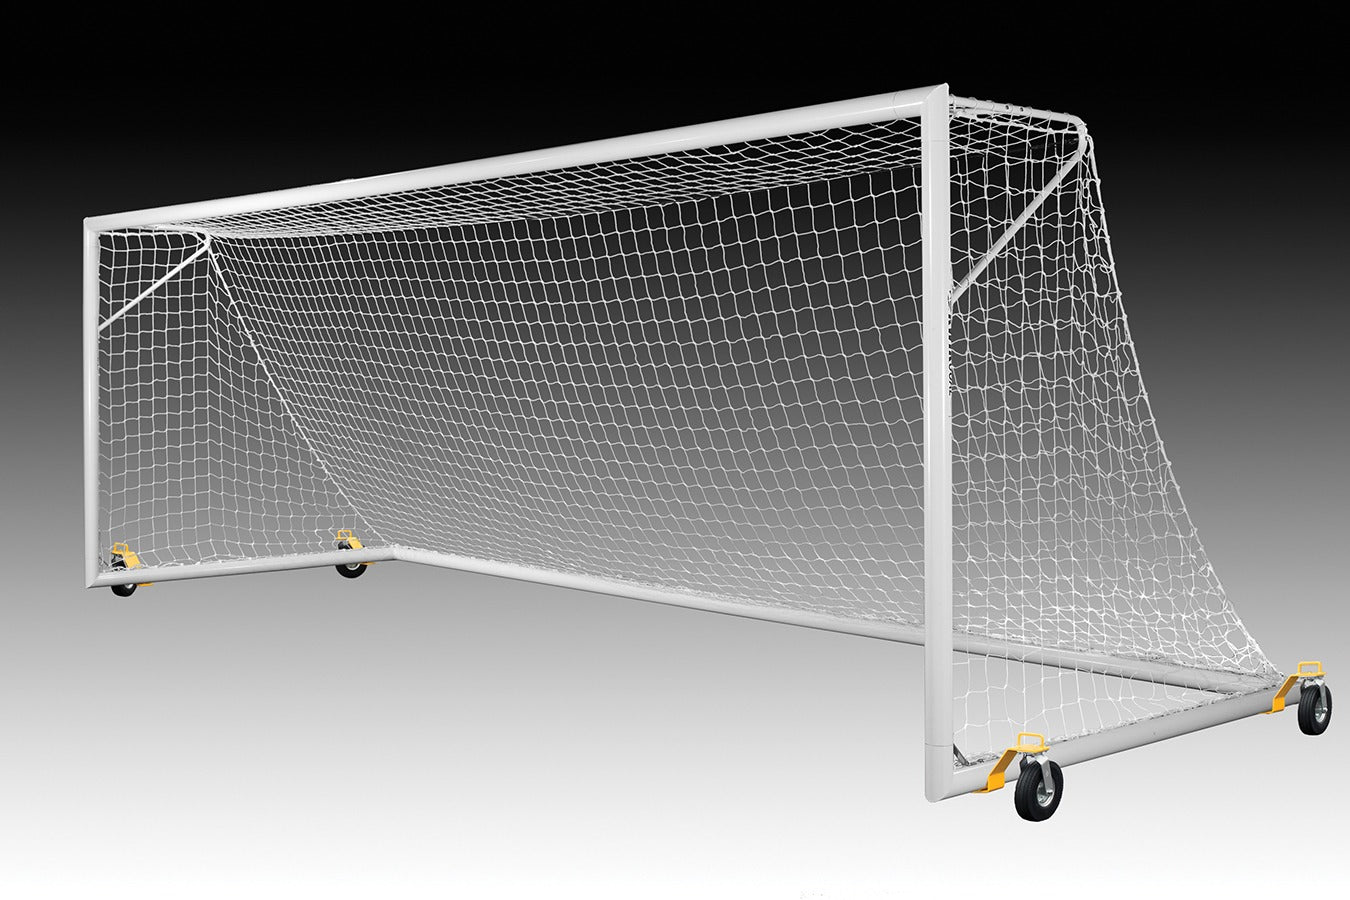 Kwik Goal Deluxe European Club Soccer Goal with Swivel Wheels